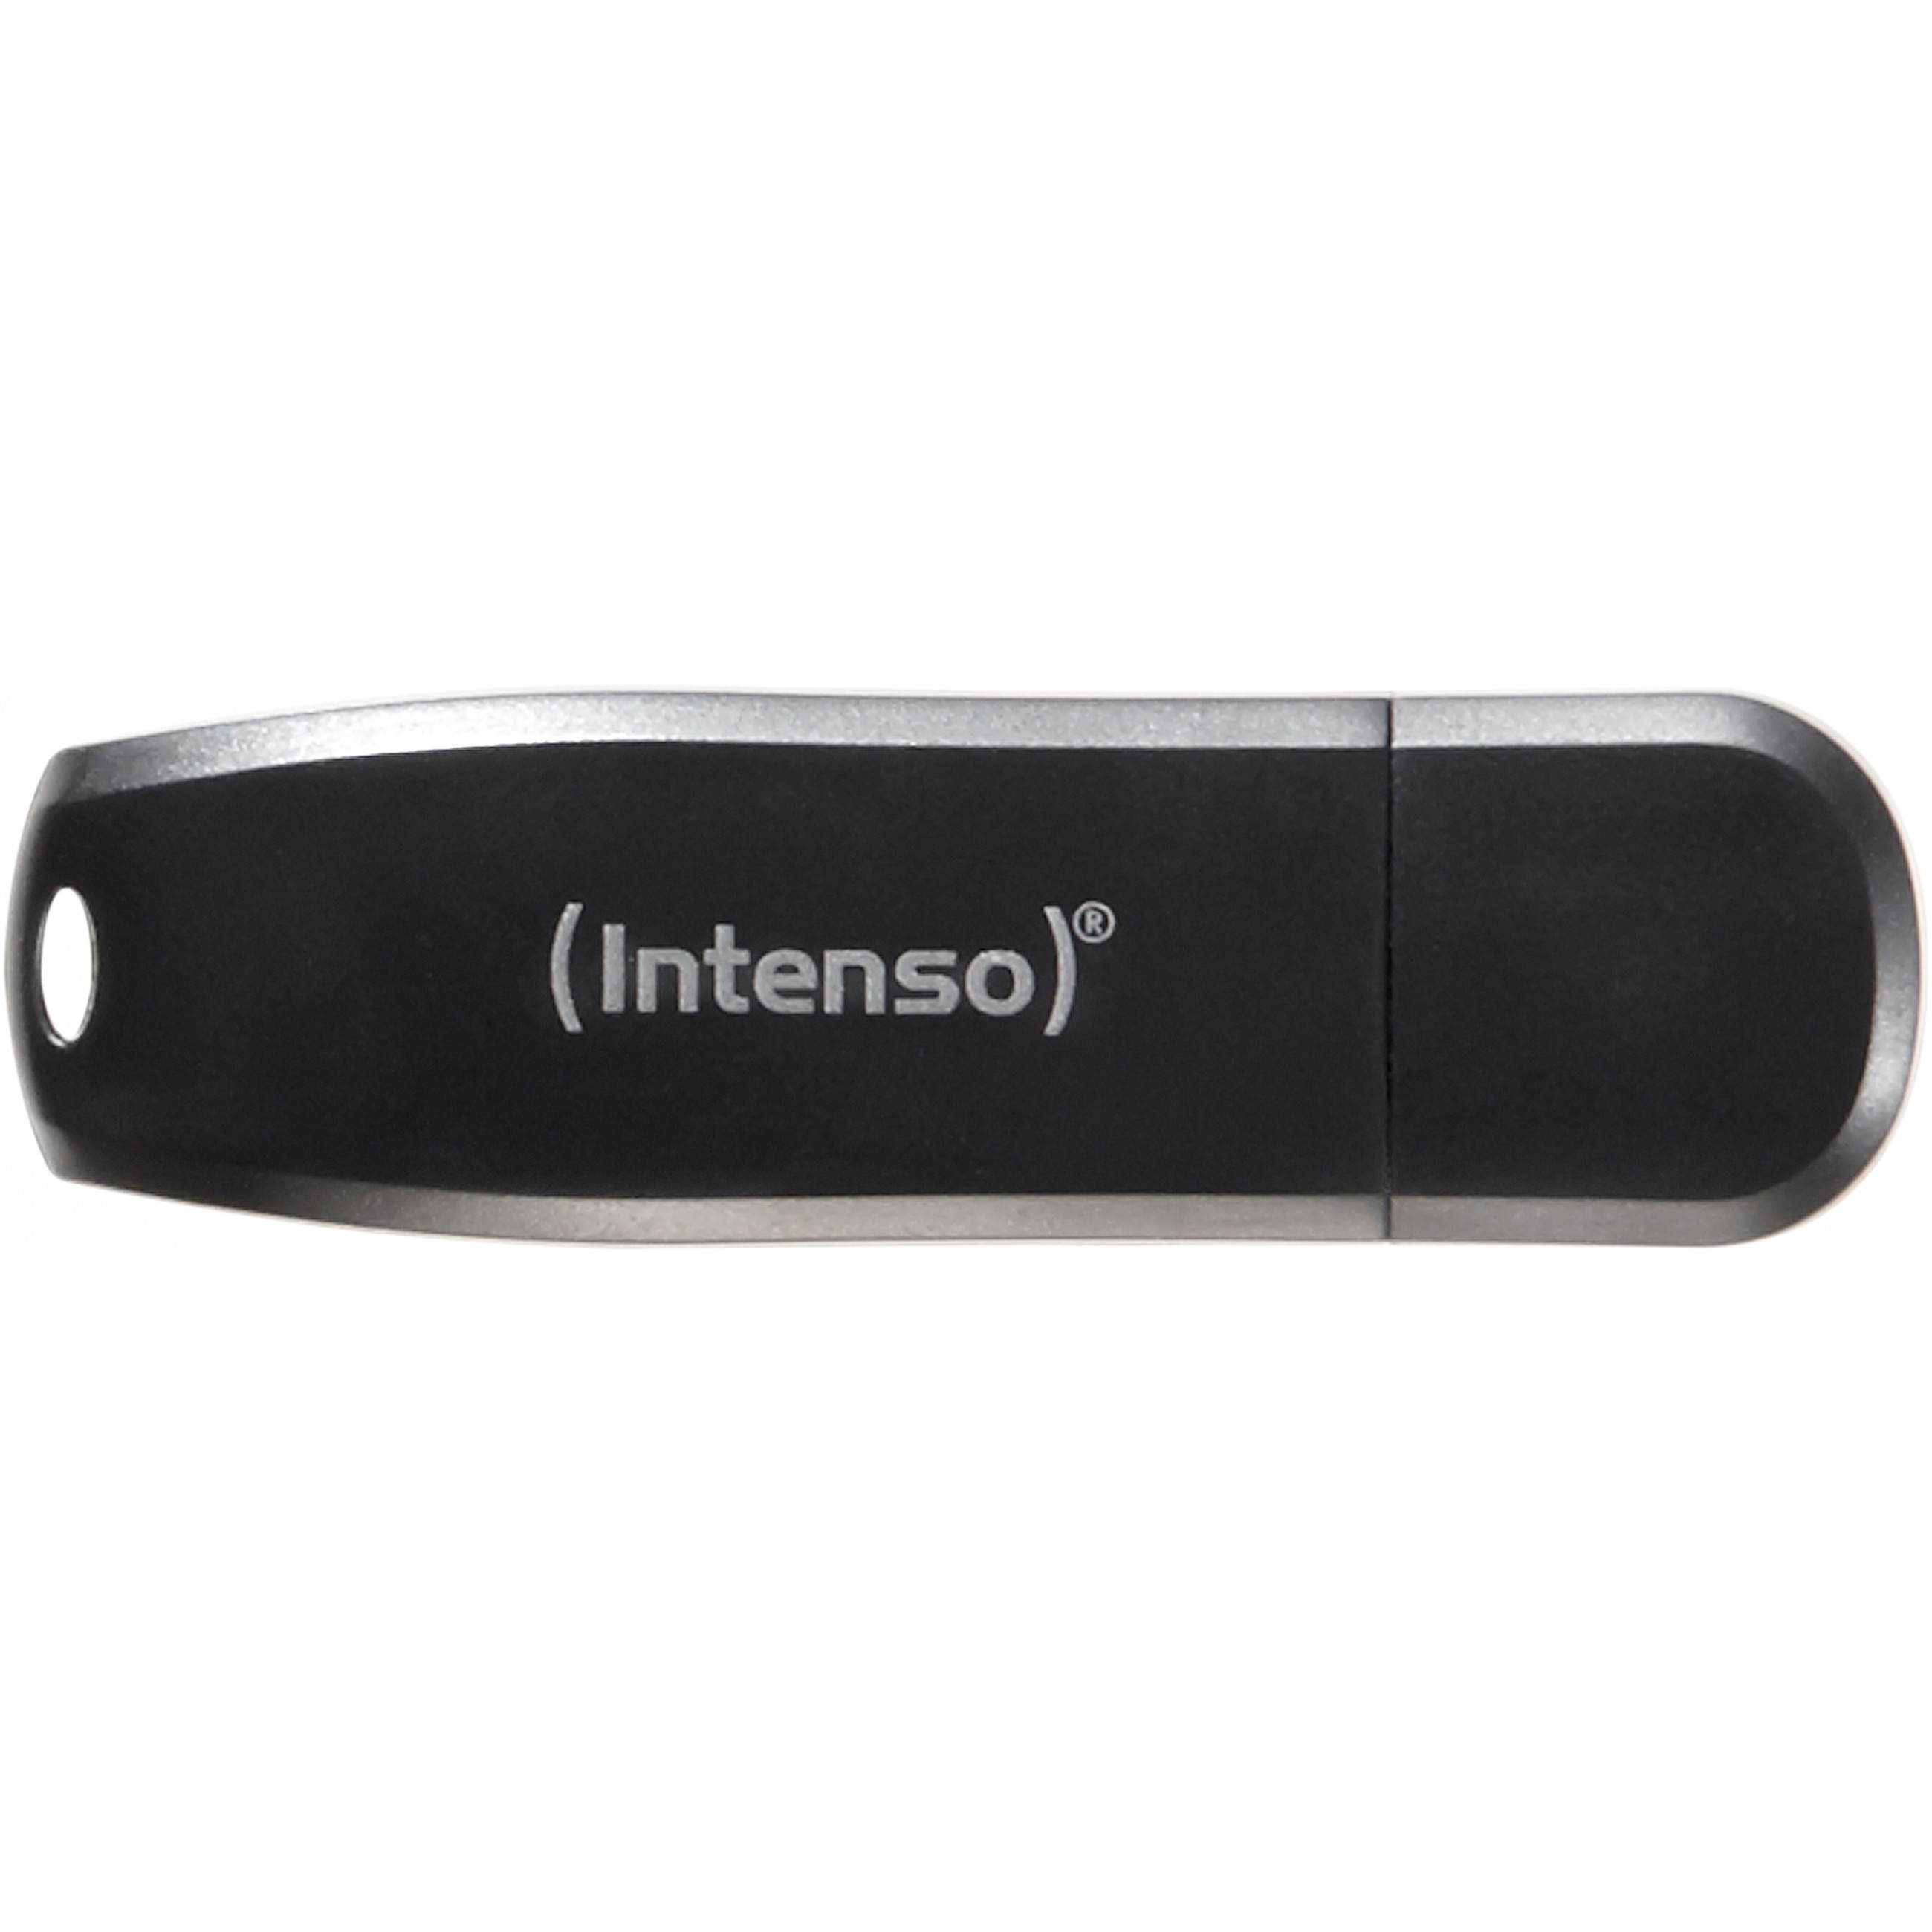 Intenso 3533470, USB-Sticks, Intenso Speed Line USB 3533470 (BILD1)